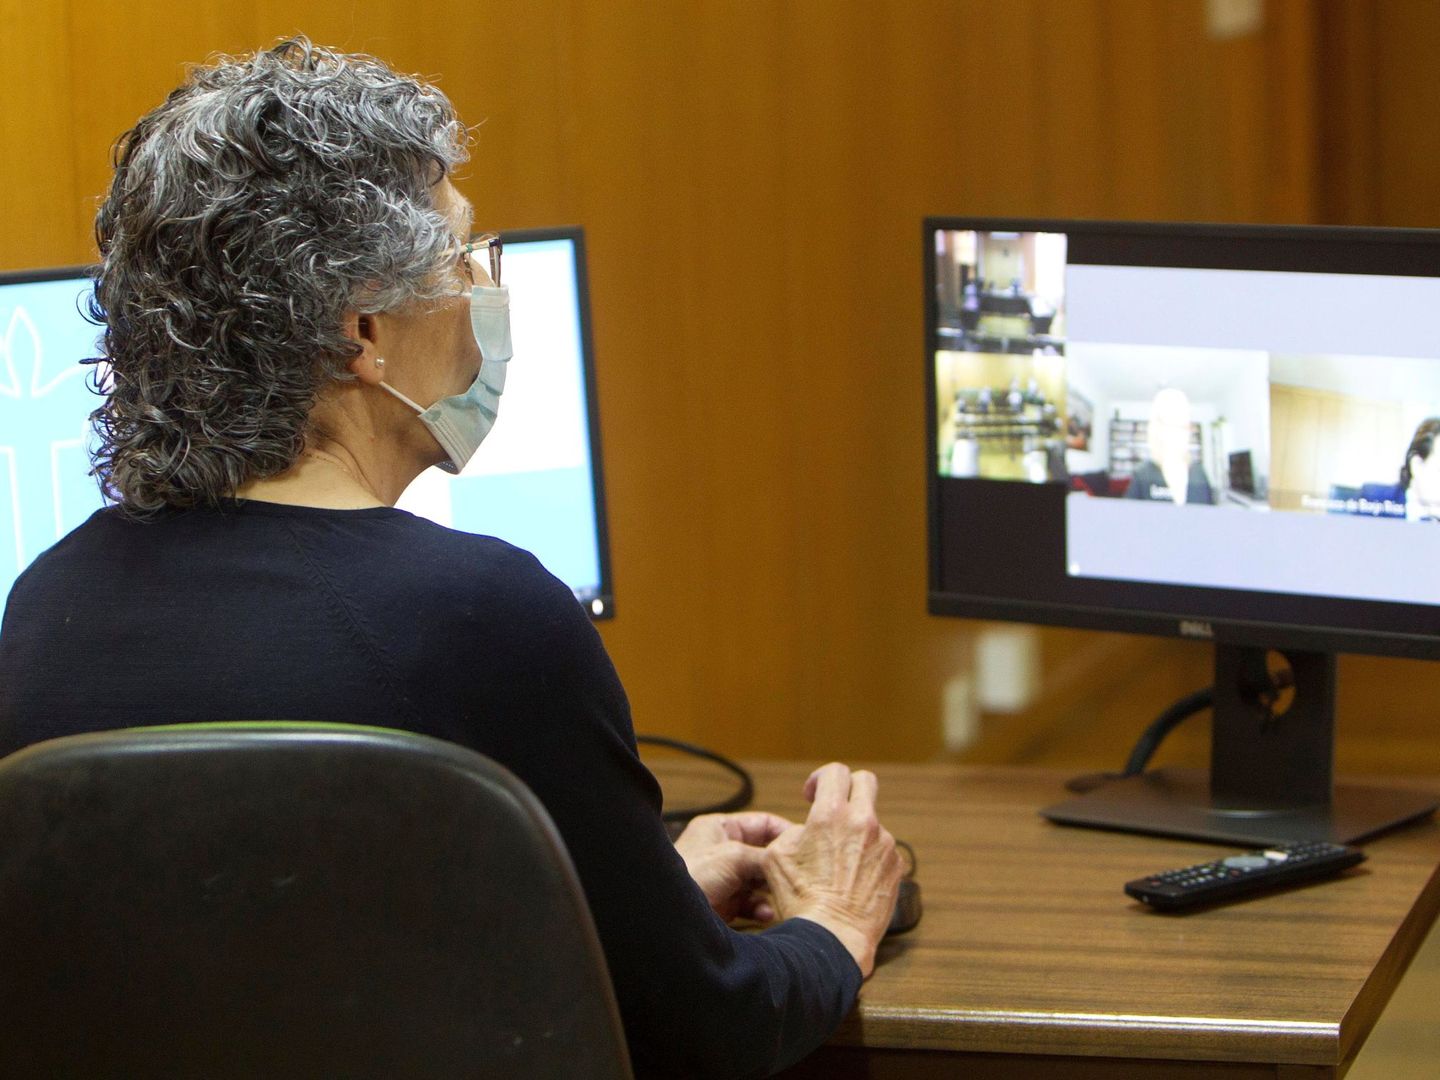 La secretaria de juzgado durante el primer juicio plenamente telemático en el Juzgado de lo Social número 2 en Vigo, este lunes. Durante el juicio, los abogados entrarán por videollamada en una sala virtual. (Foto: EFE)